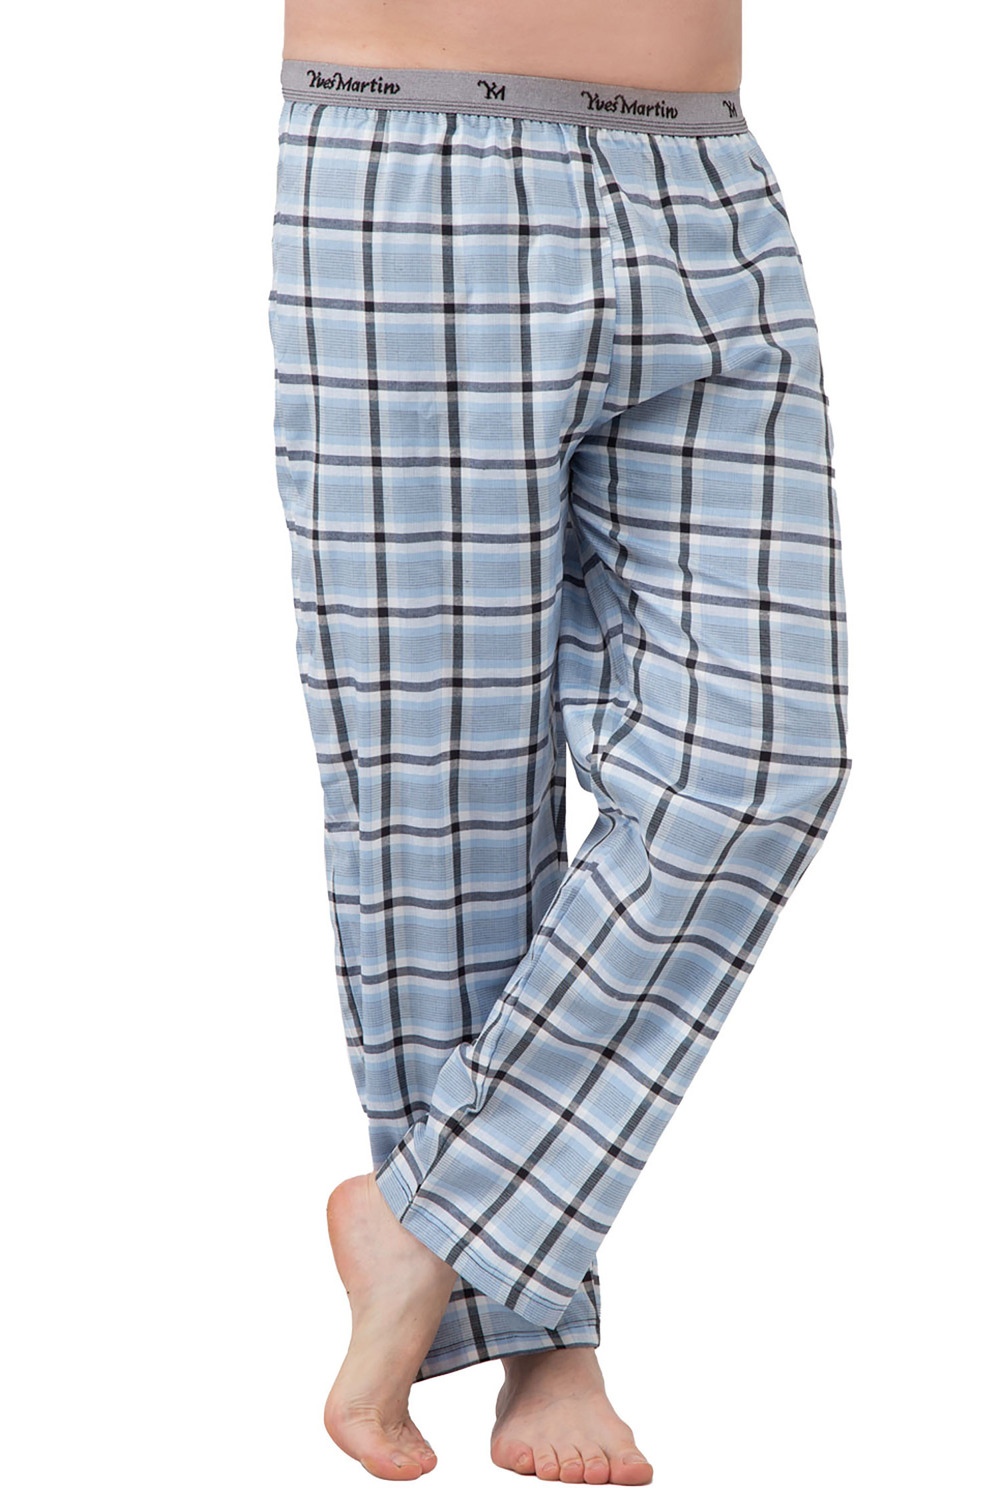 Yves Martin - Pantalon de sommeil en flanelle pour hommes, carreaux bleu, moyen (M)